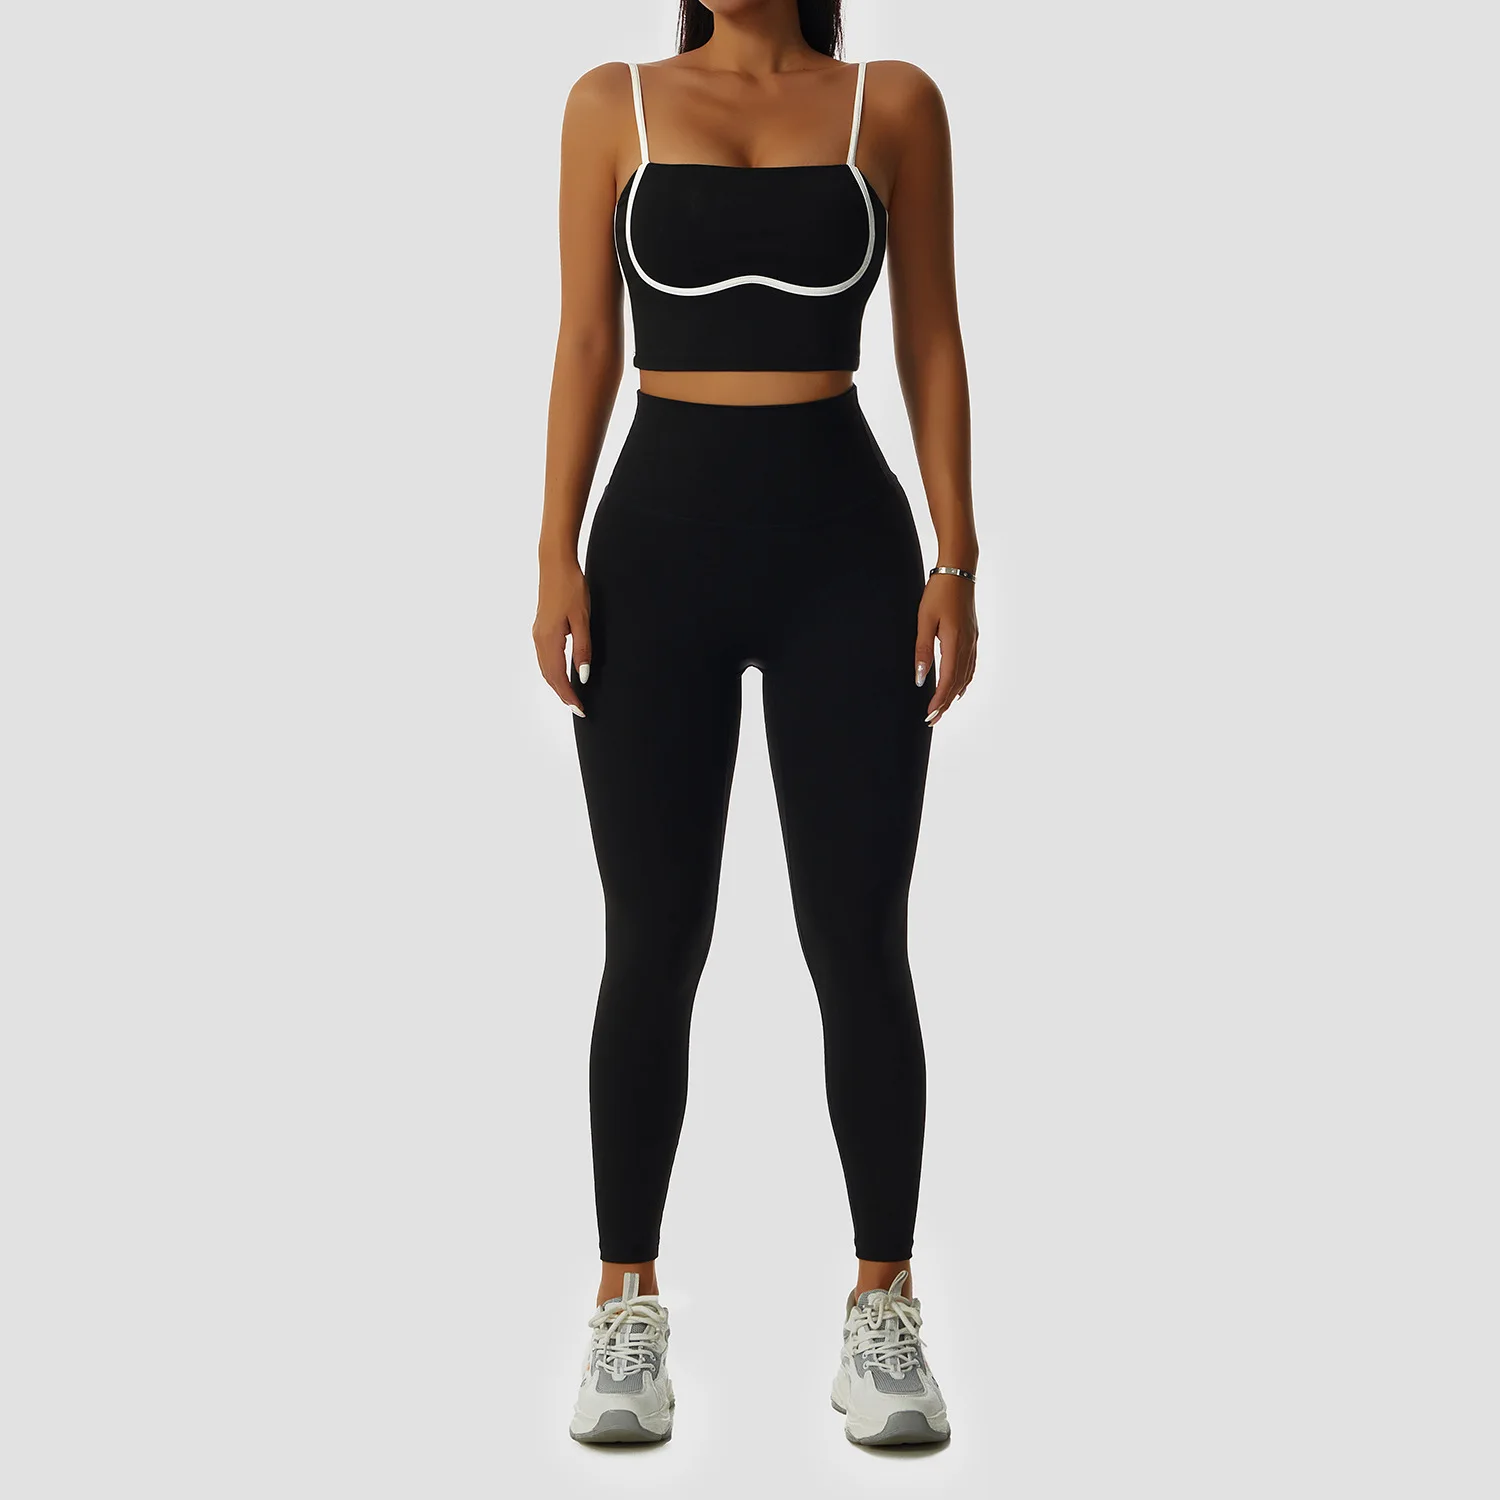 Kadınlar için spor Sutyen Seti Spor Dikişsiz bralette Yüksek Darbe Spor Sutyeni Yoga Spor Setleri Kadın İç Çamaşırı Push-up sütyen Spor Görüntü  0